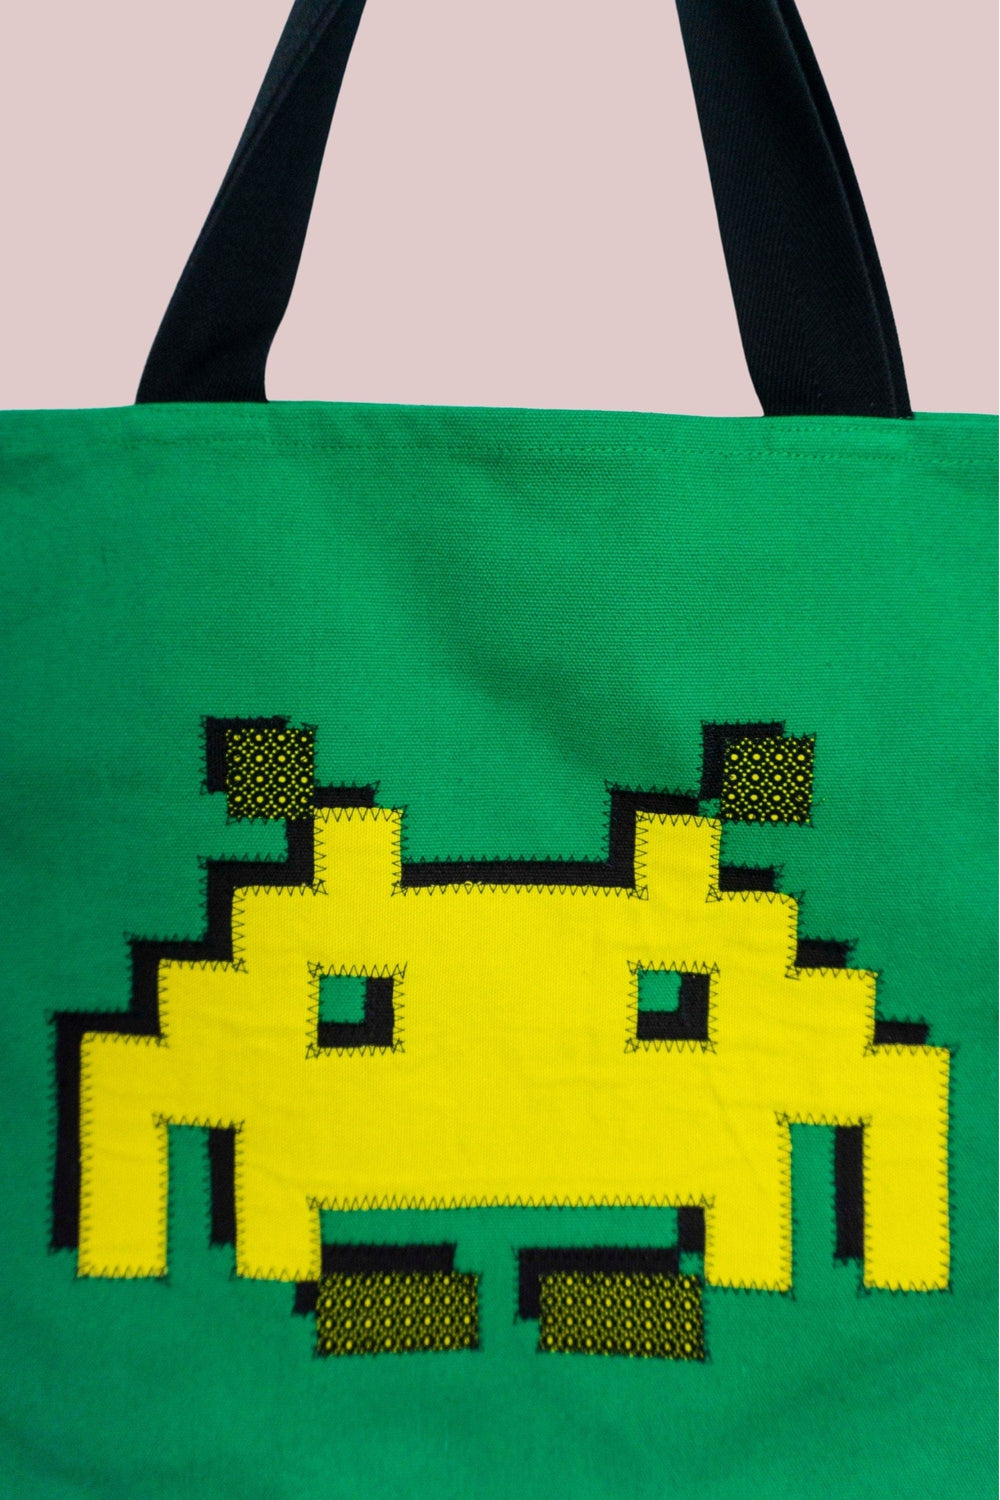 Space Invader Green Ankara Tote Bag